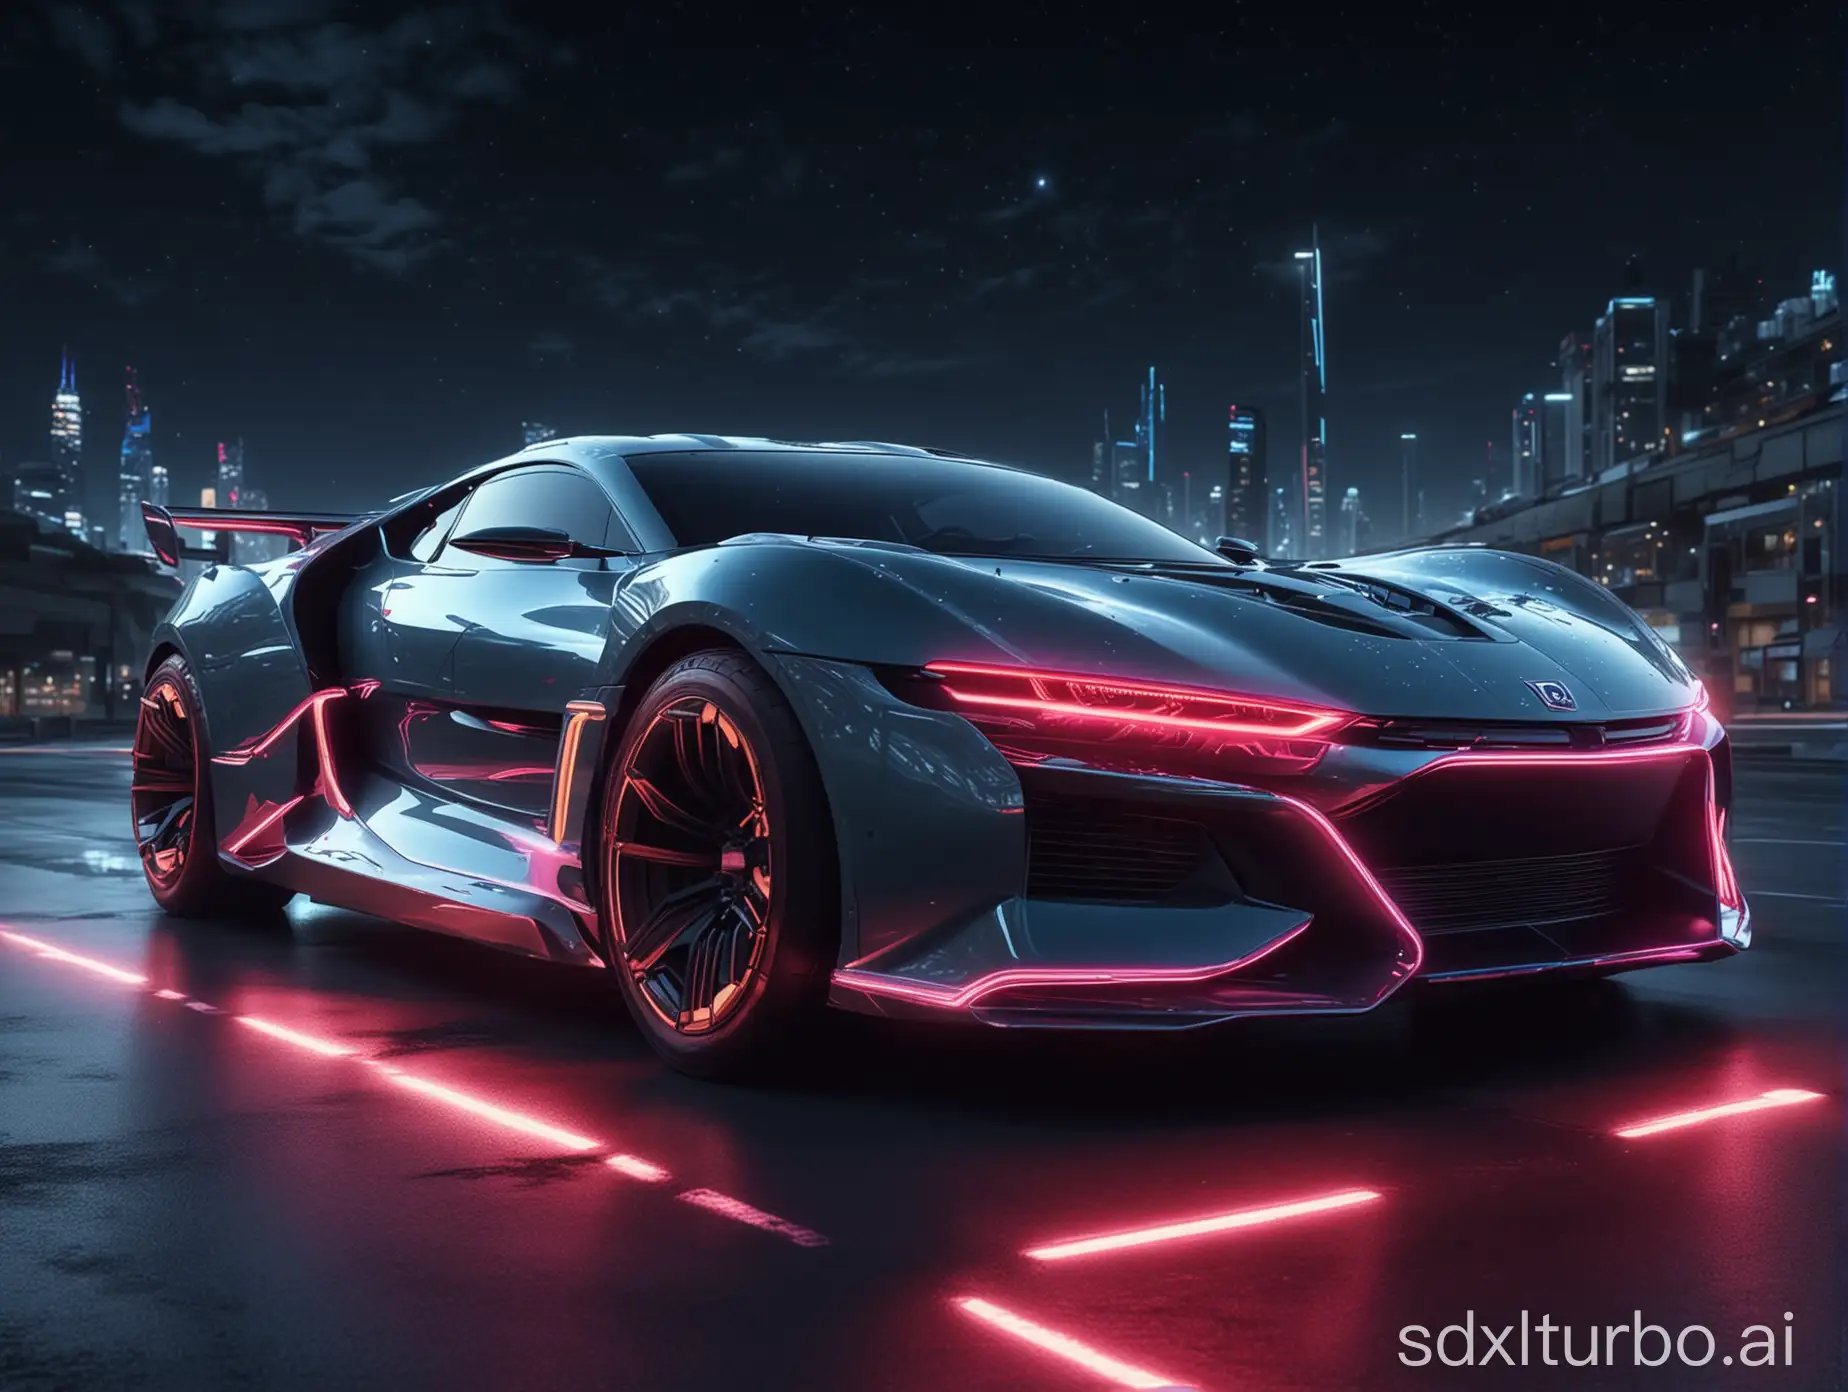 trainées de lumières neon fluo de nuit derrière une voiture au design futuriste, 8k, hyper détaillé, hyper réaliste